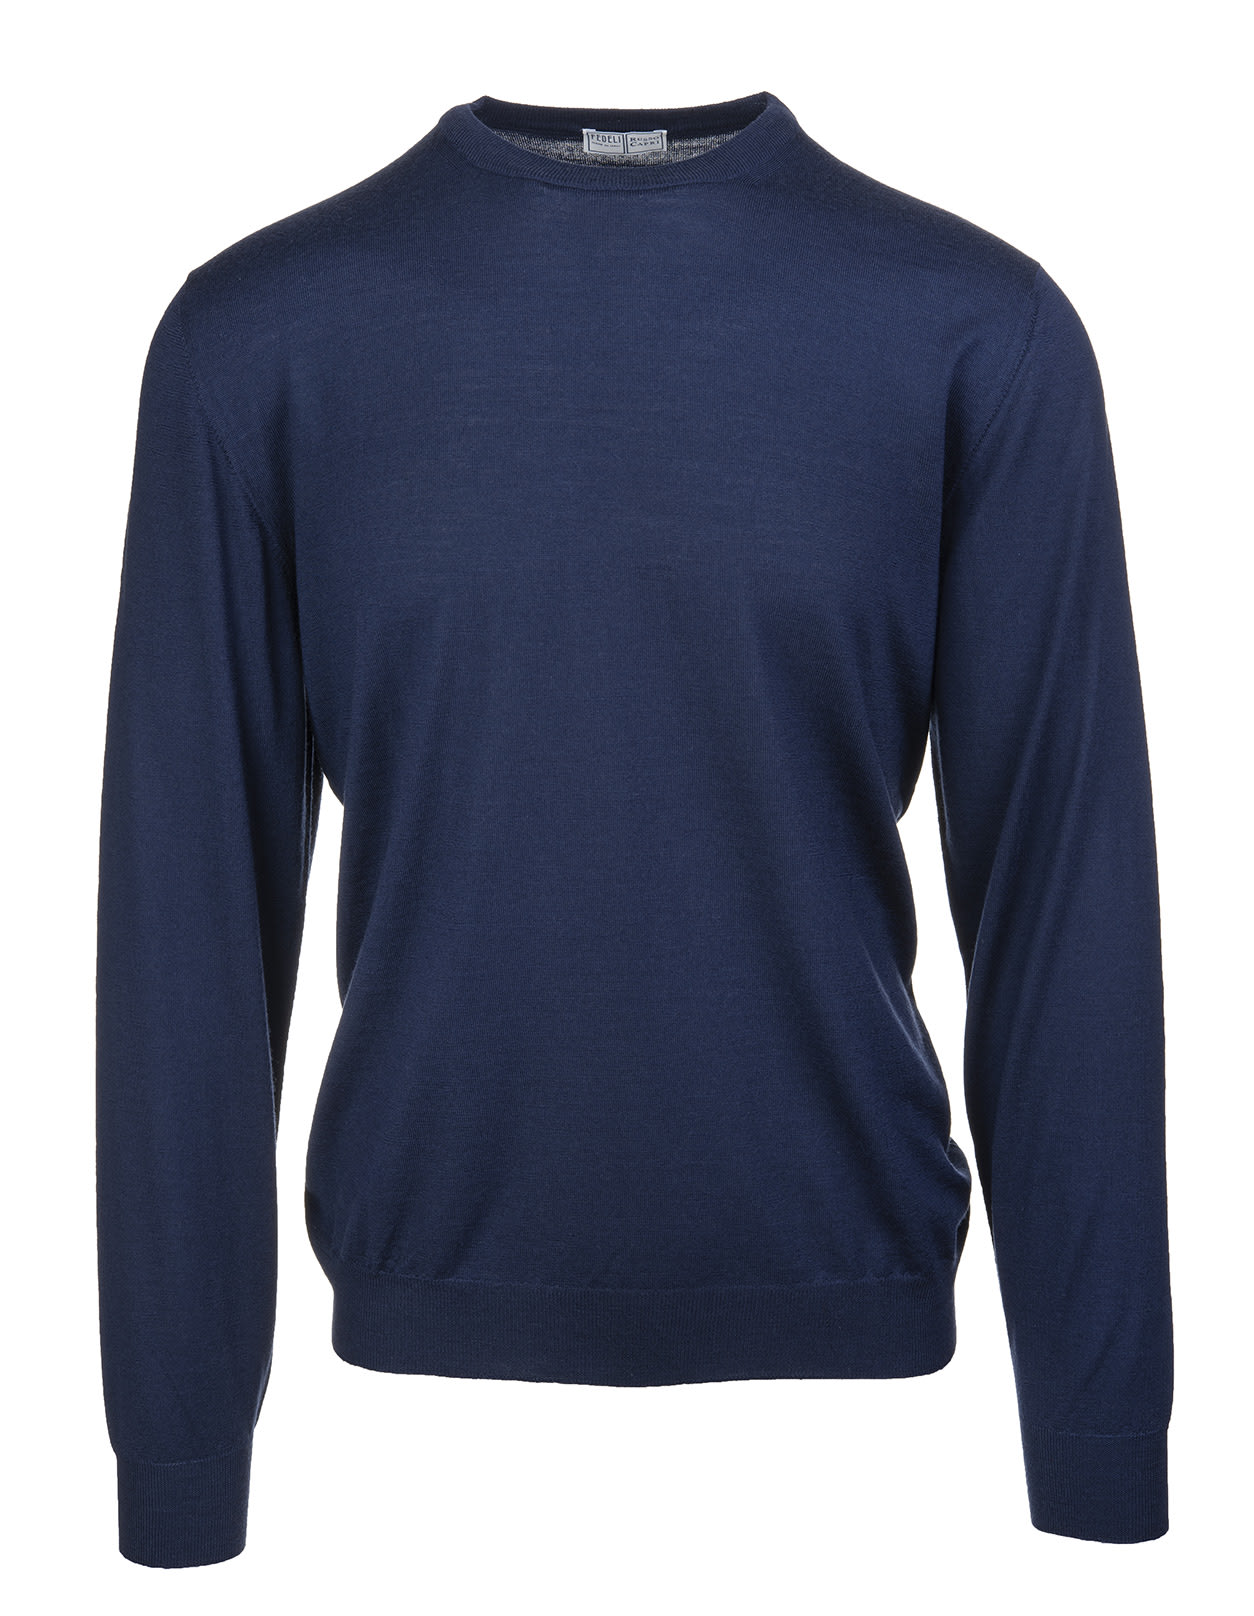 Shop Fedeli Round-neck Pullover In Dark Blue Wool